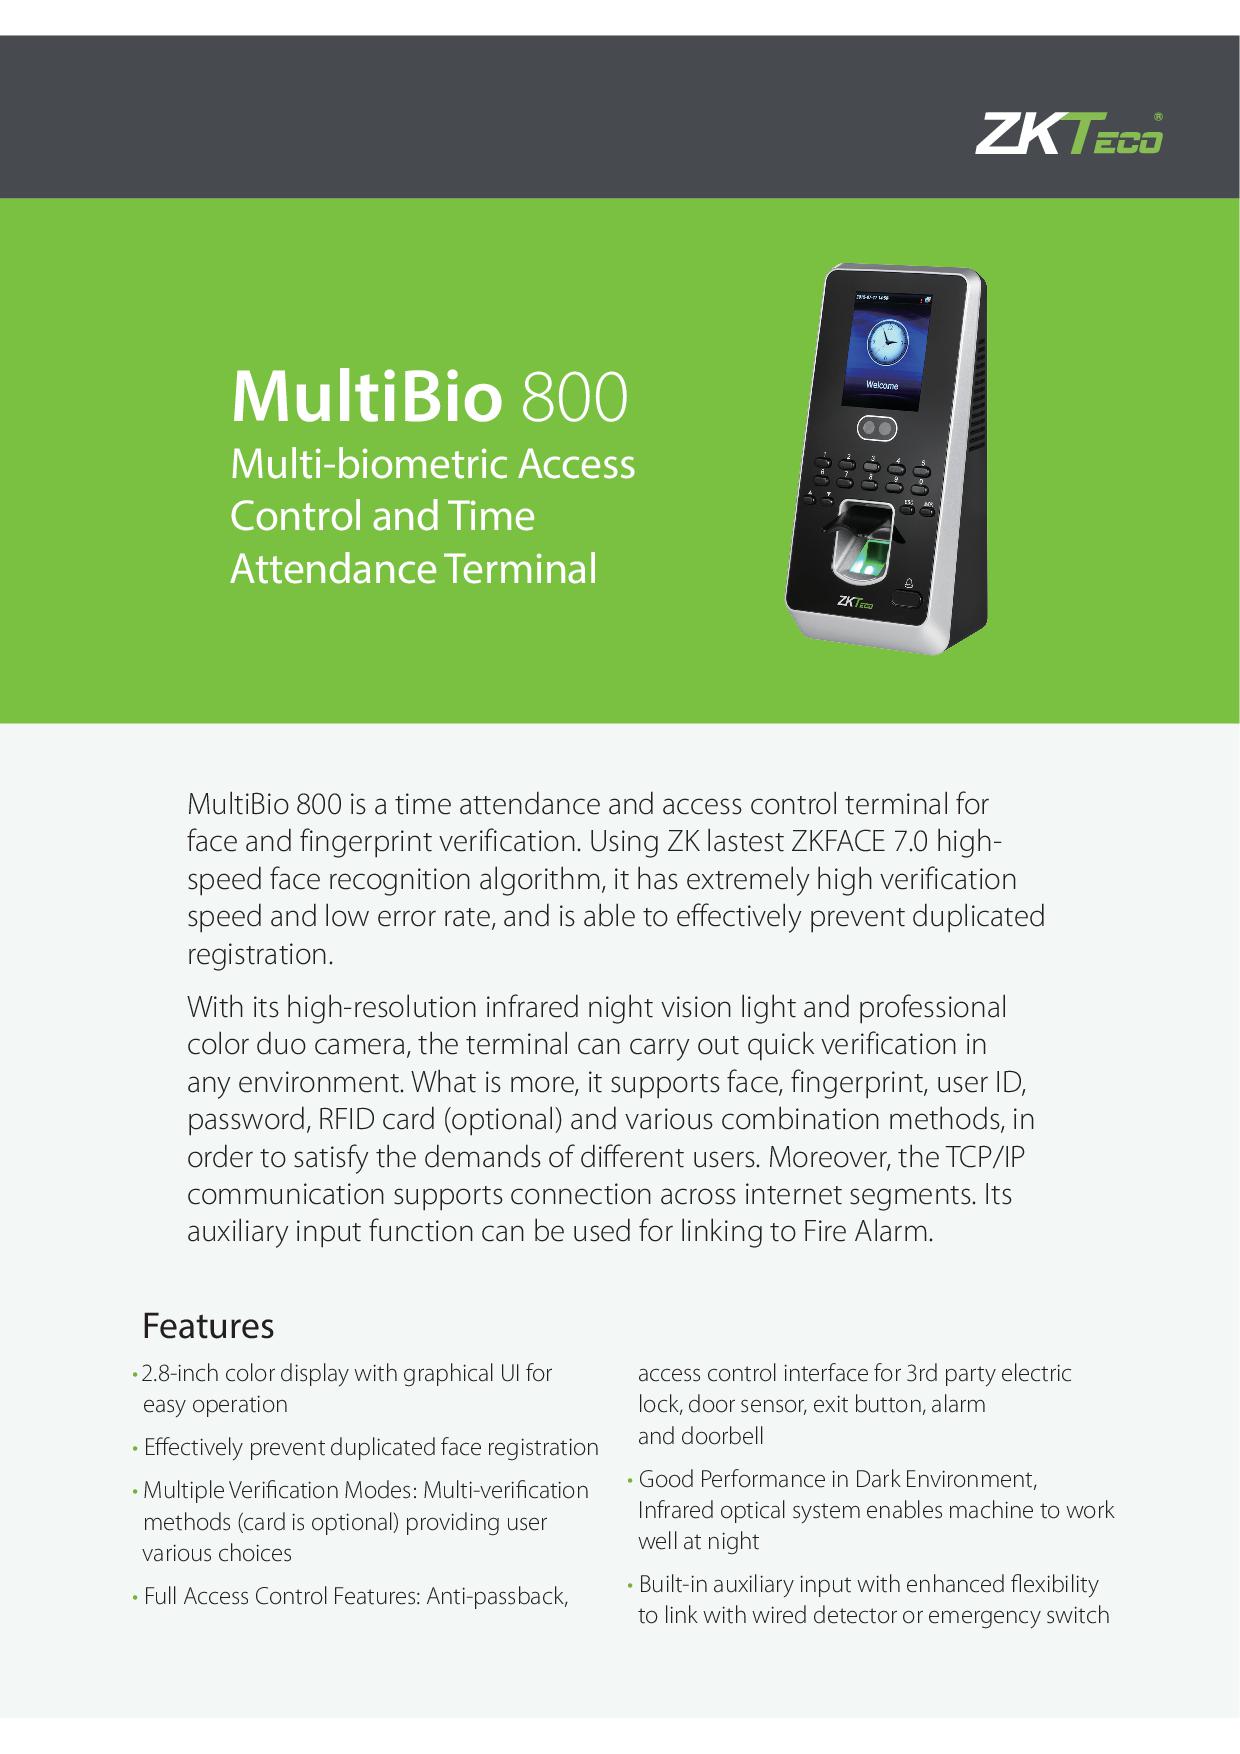 MultiBio800